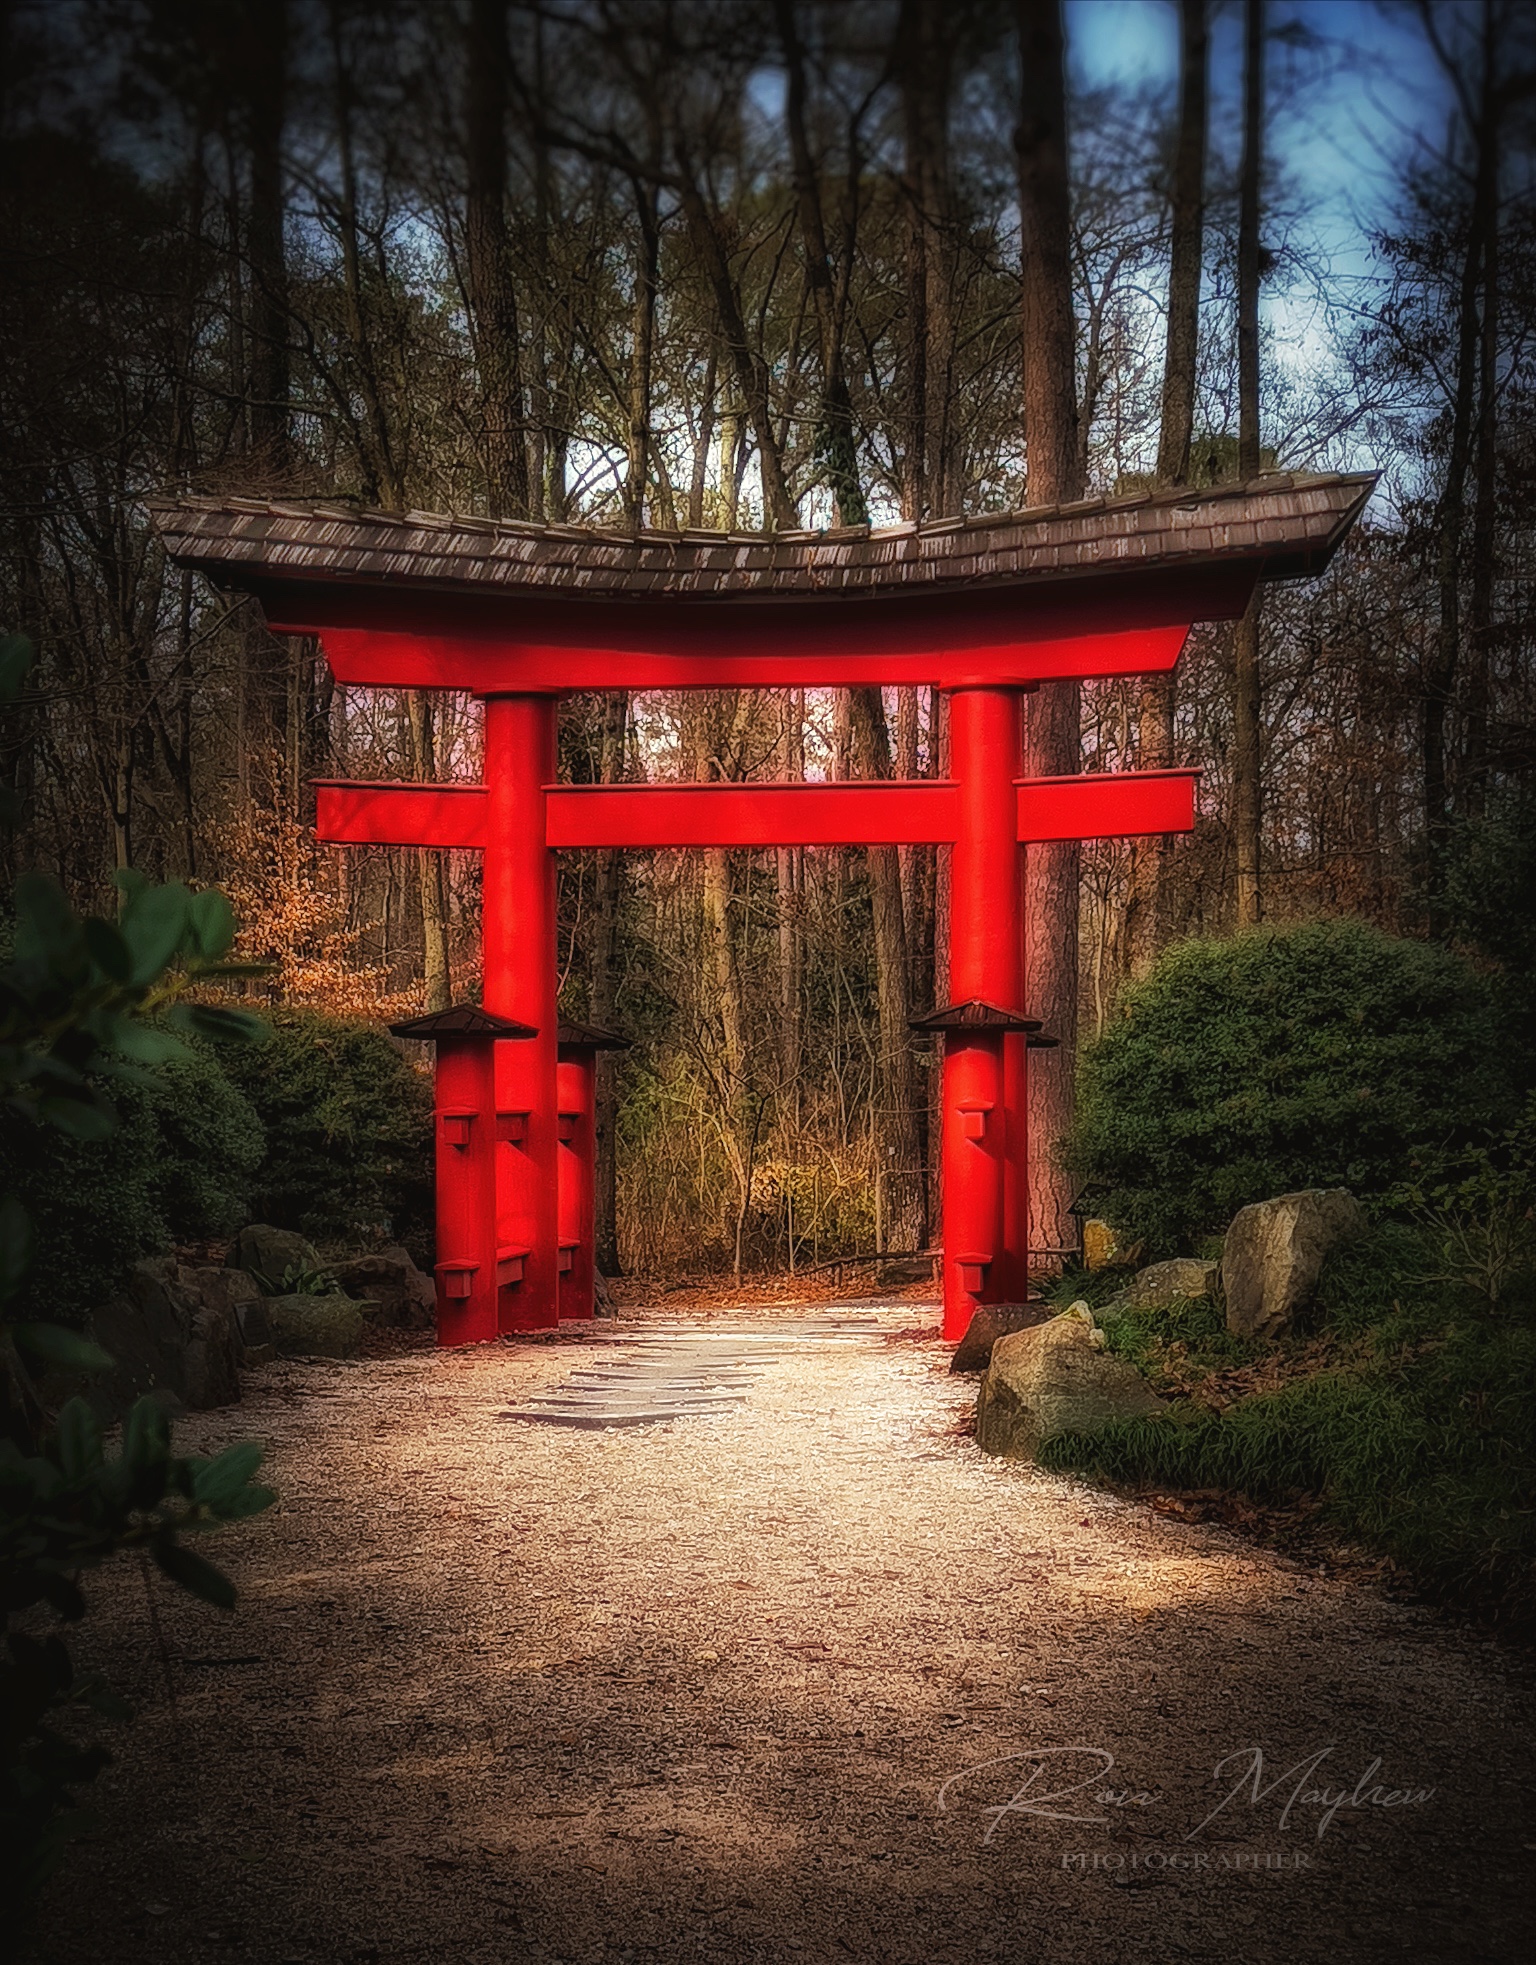 The Torii Gate